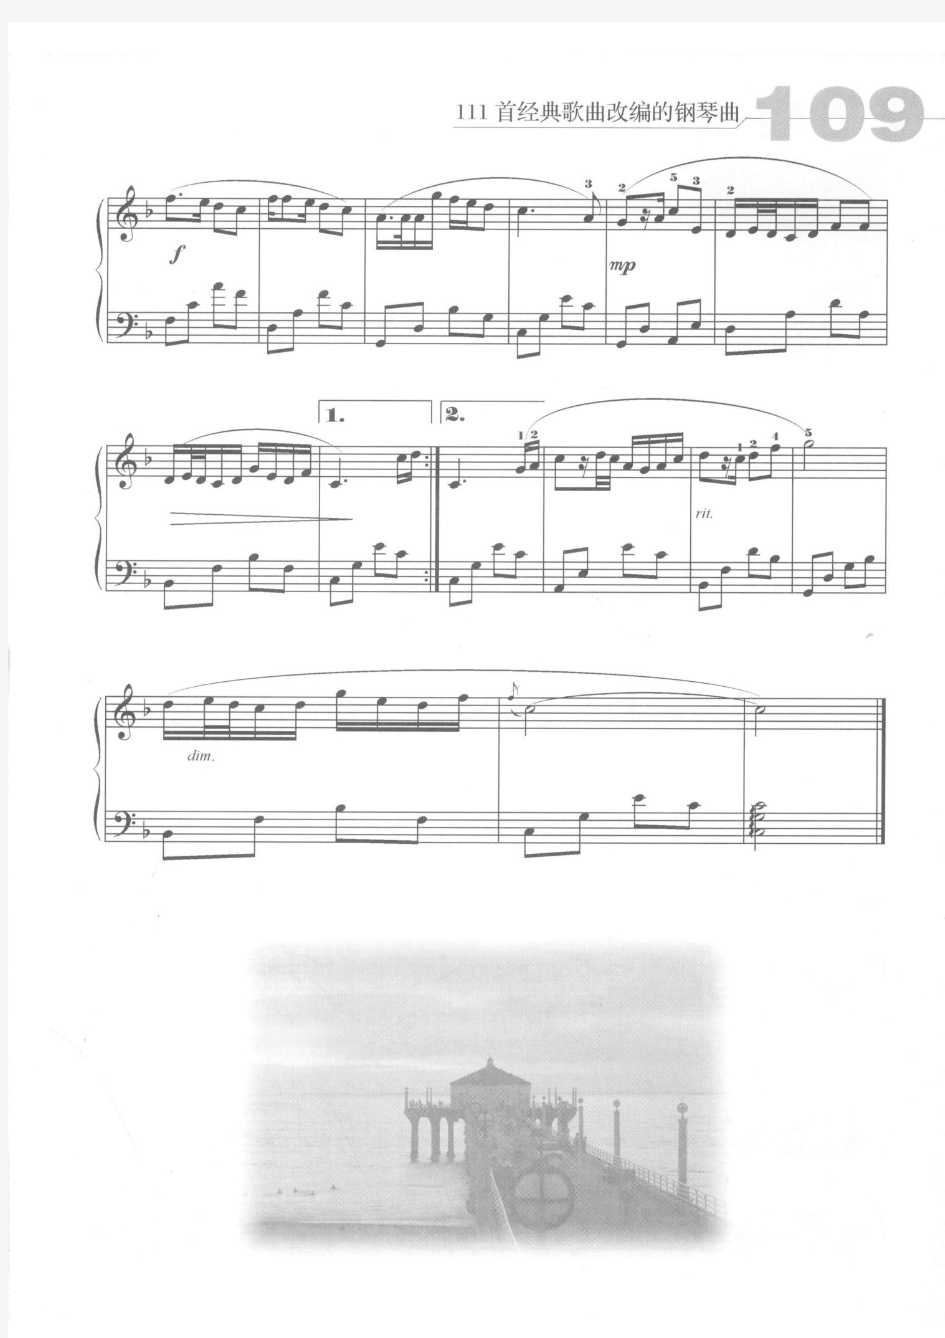 十五的月亮 原版 正谱 钢琴谱 五线谱 乐谱